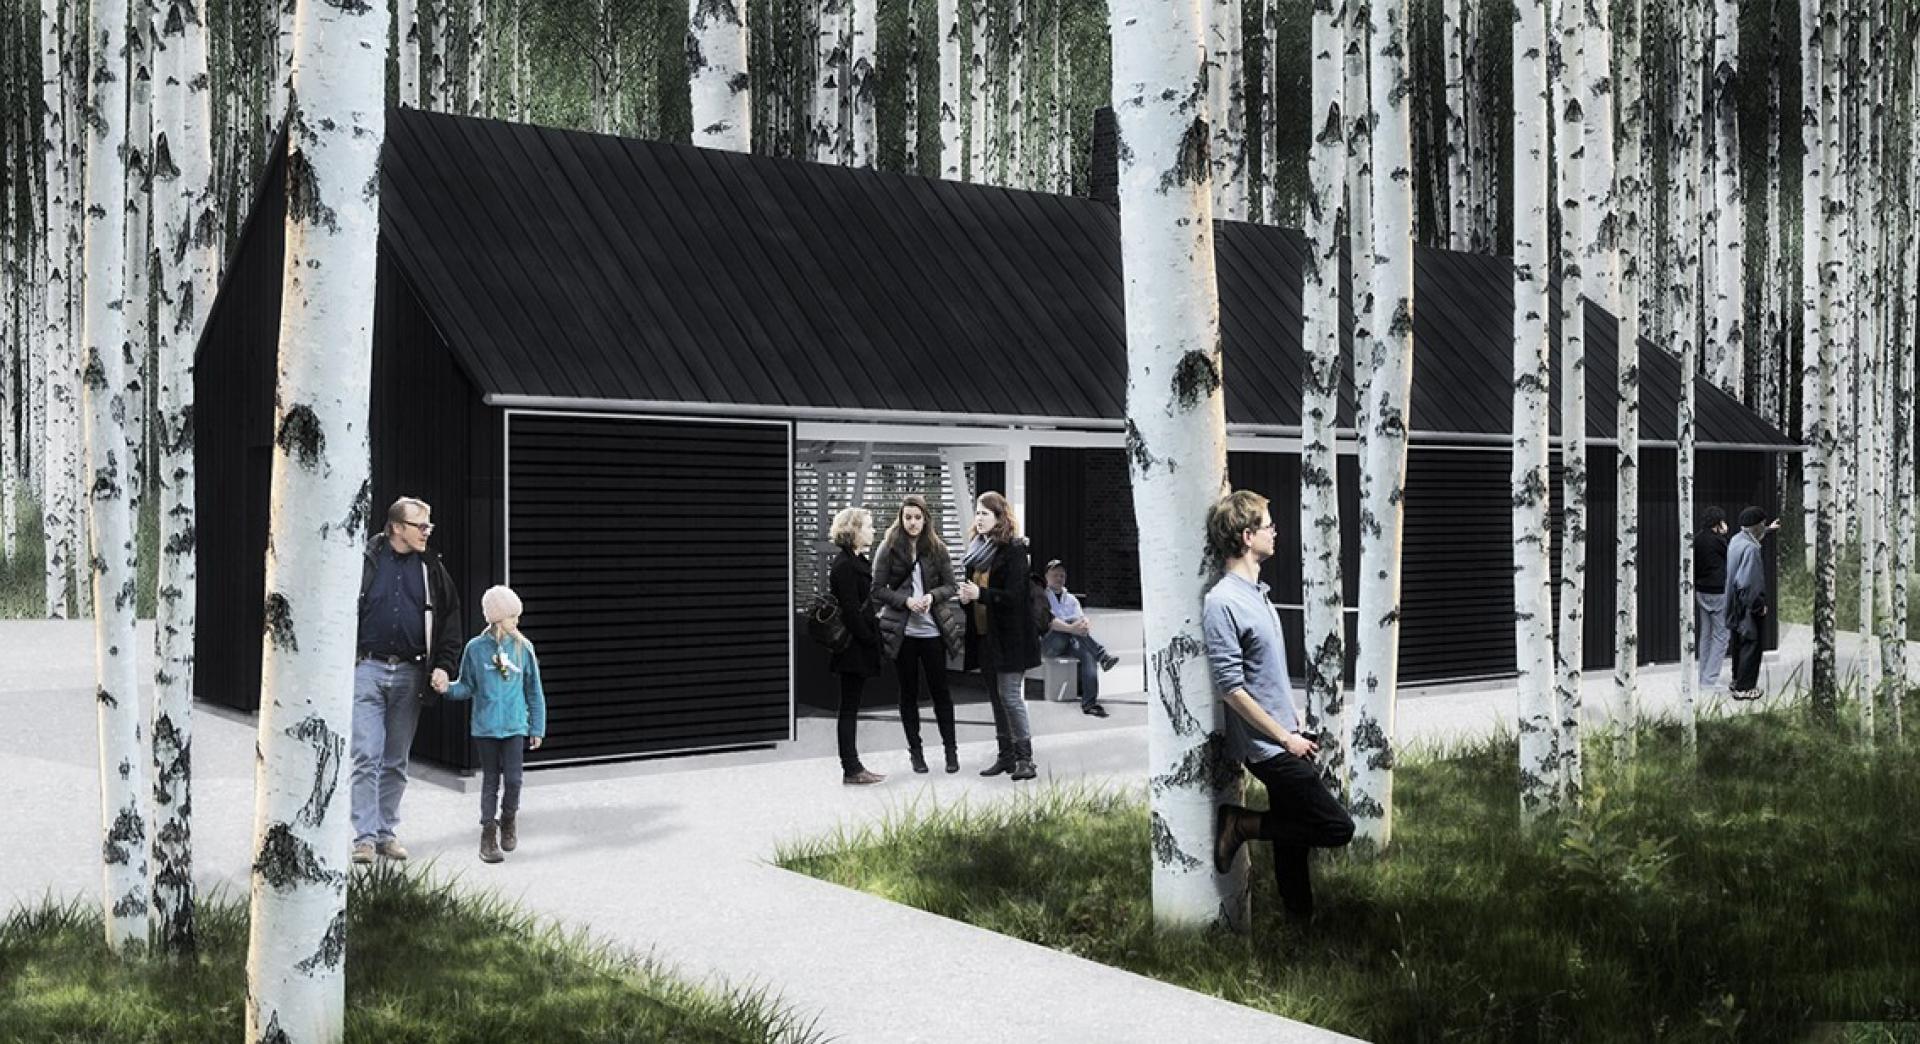 Et nyt madpakkehus indgår i omdannelsesplanerne for Harteværket i Kolding. Illustration: Kolding Kommune.